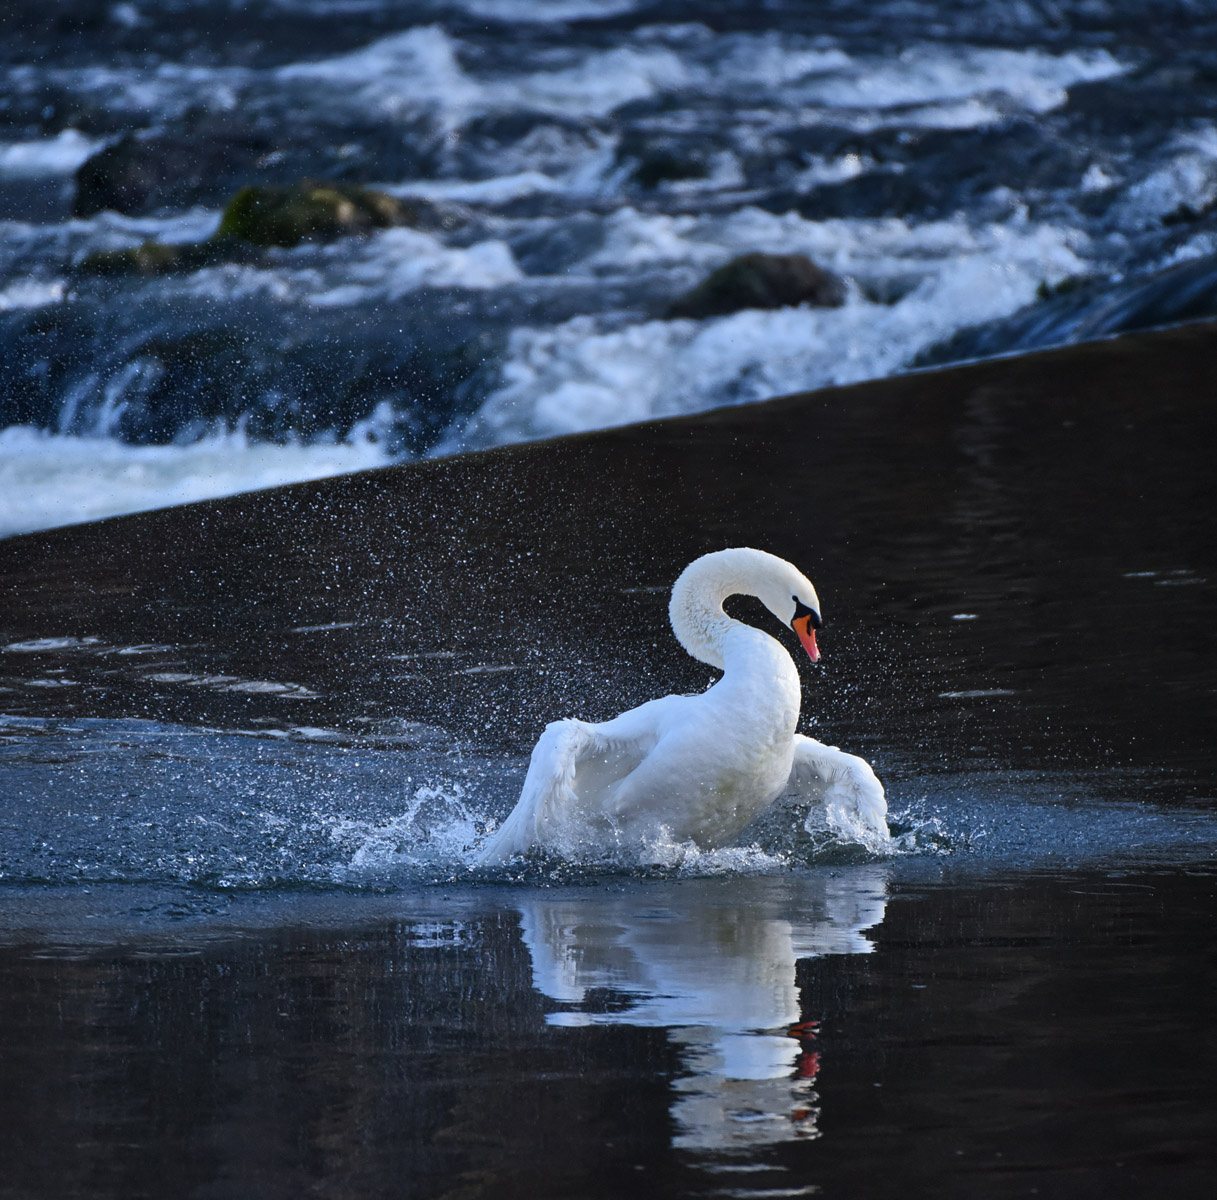 Жизнь на воде, или элементы утреннего моциона лебедь утренняя зарядка вода перекат